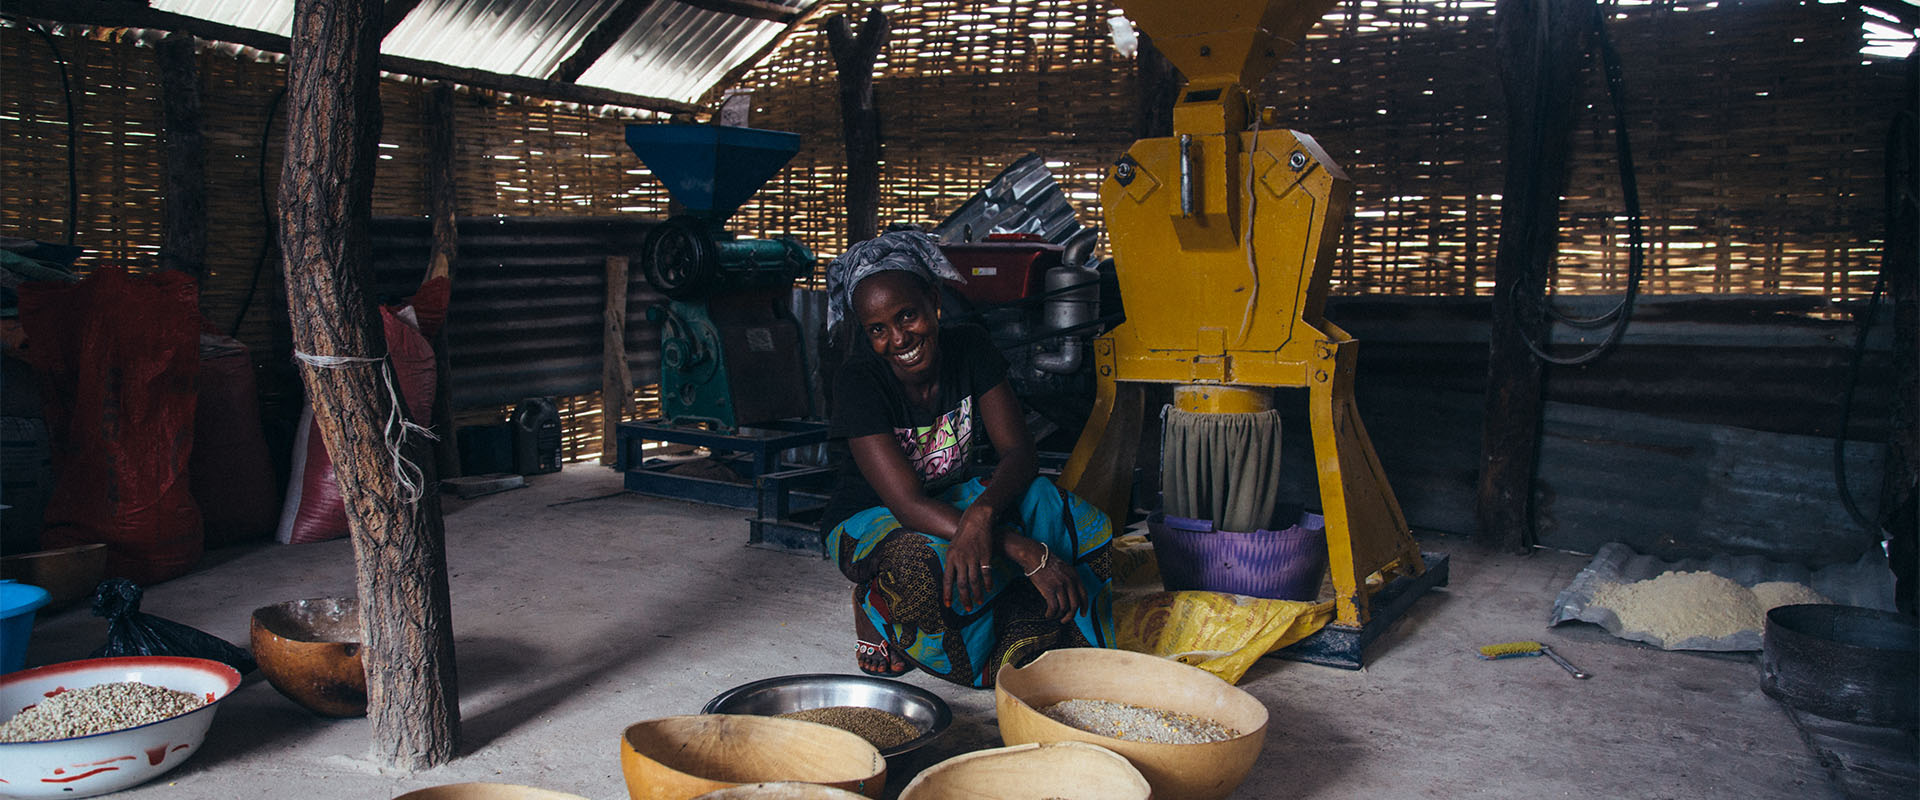 centro trasformazione cereali pirada Guinea Bissau Mani Tese 2017